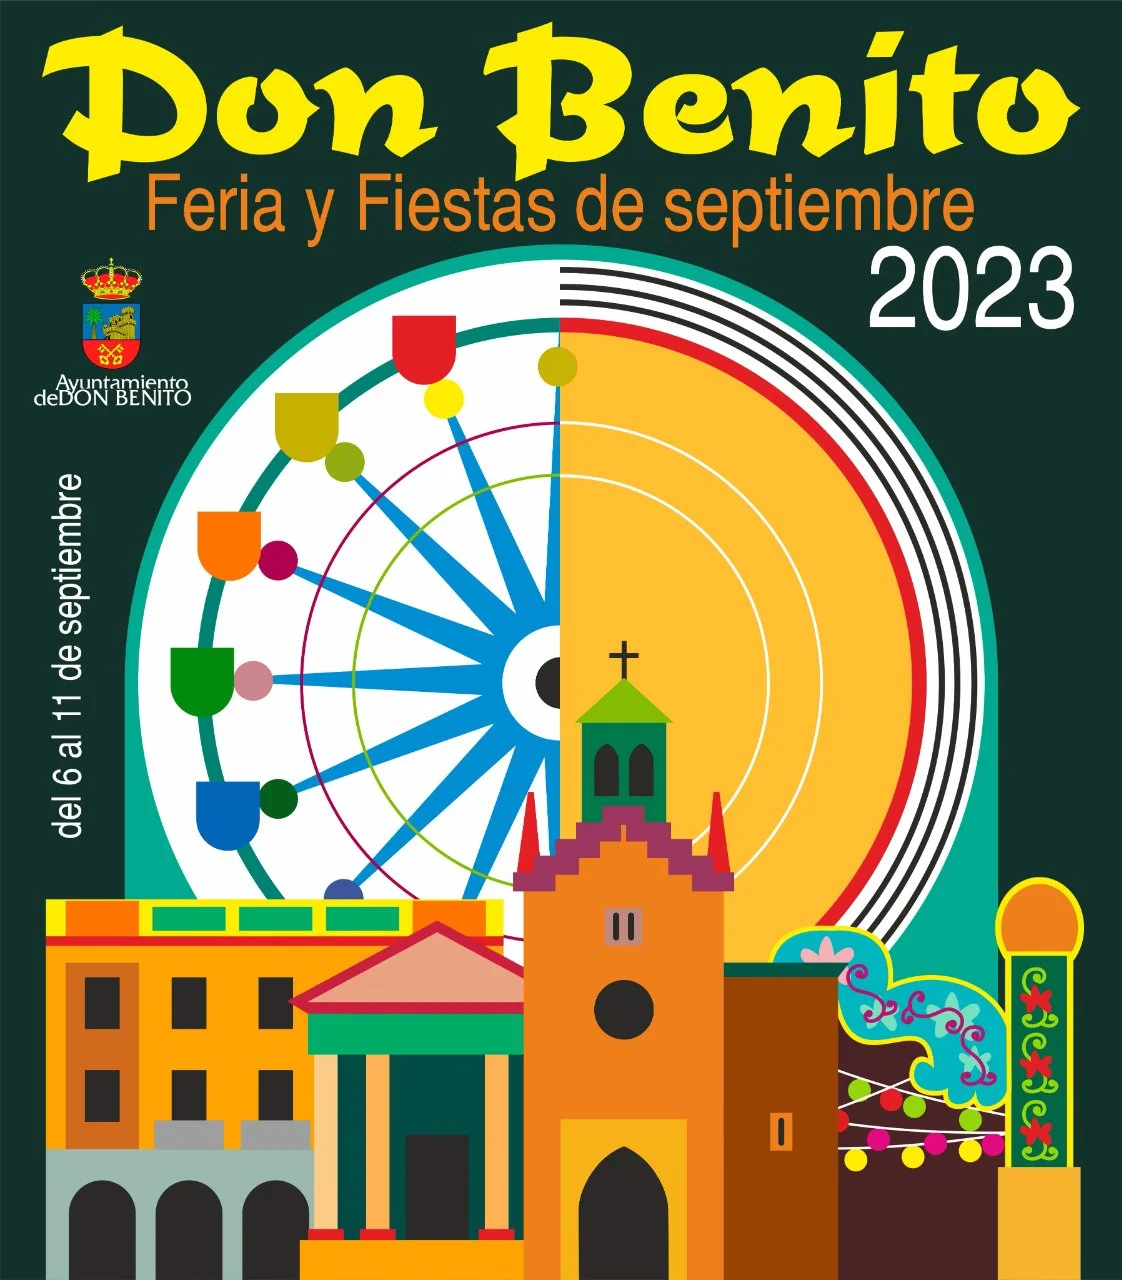 Feria y Fiestas de Don Benito 2023